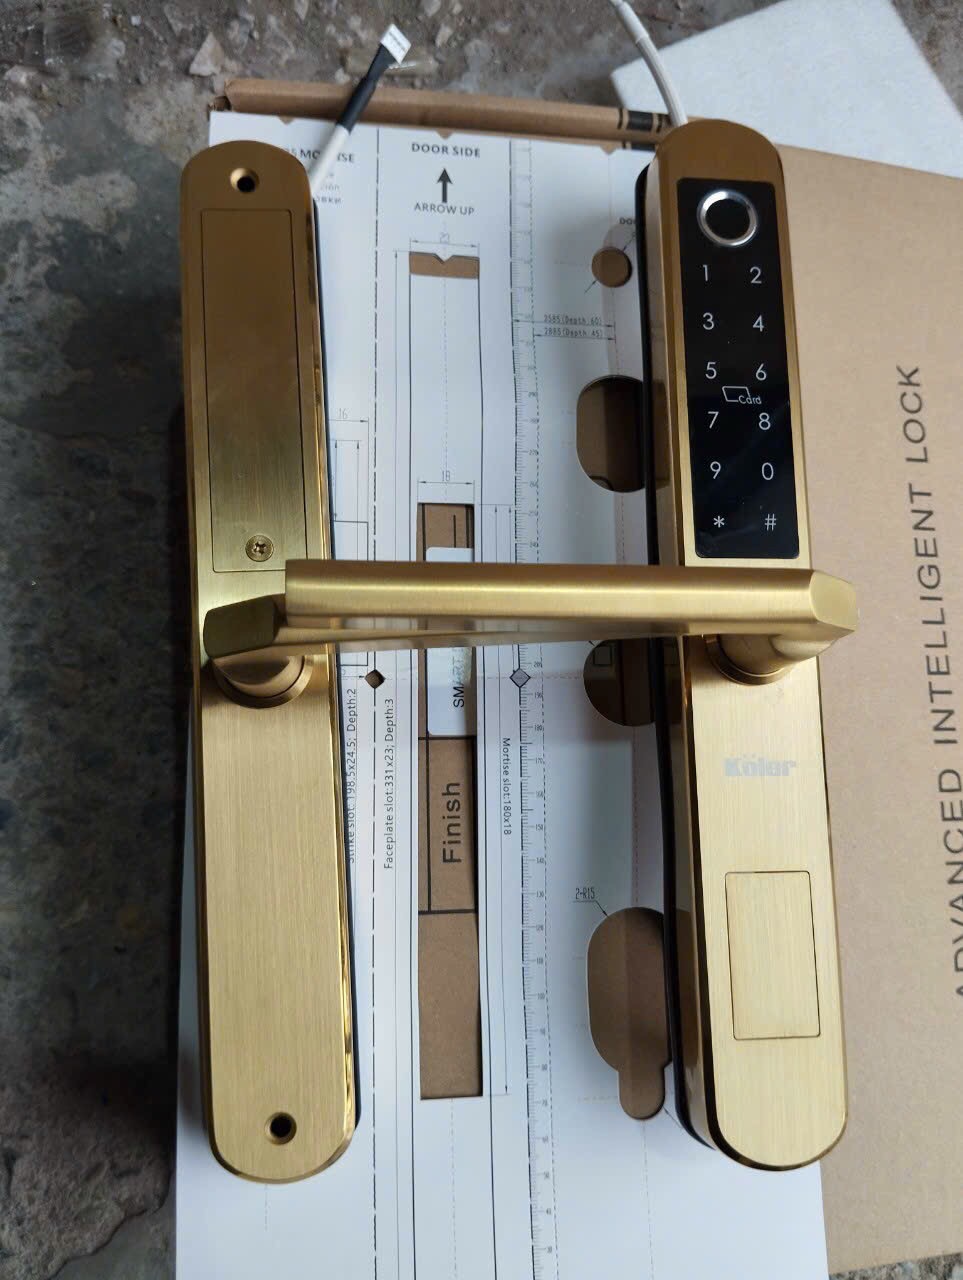 Khoá vân tay cửa nhôm kính mạ vàng koler S1500 5 tính năng mở được bằng điện thoại